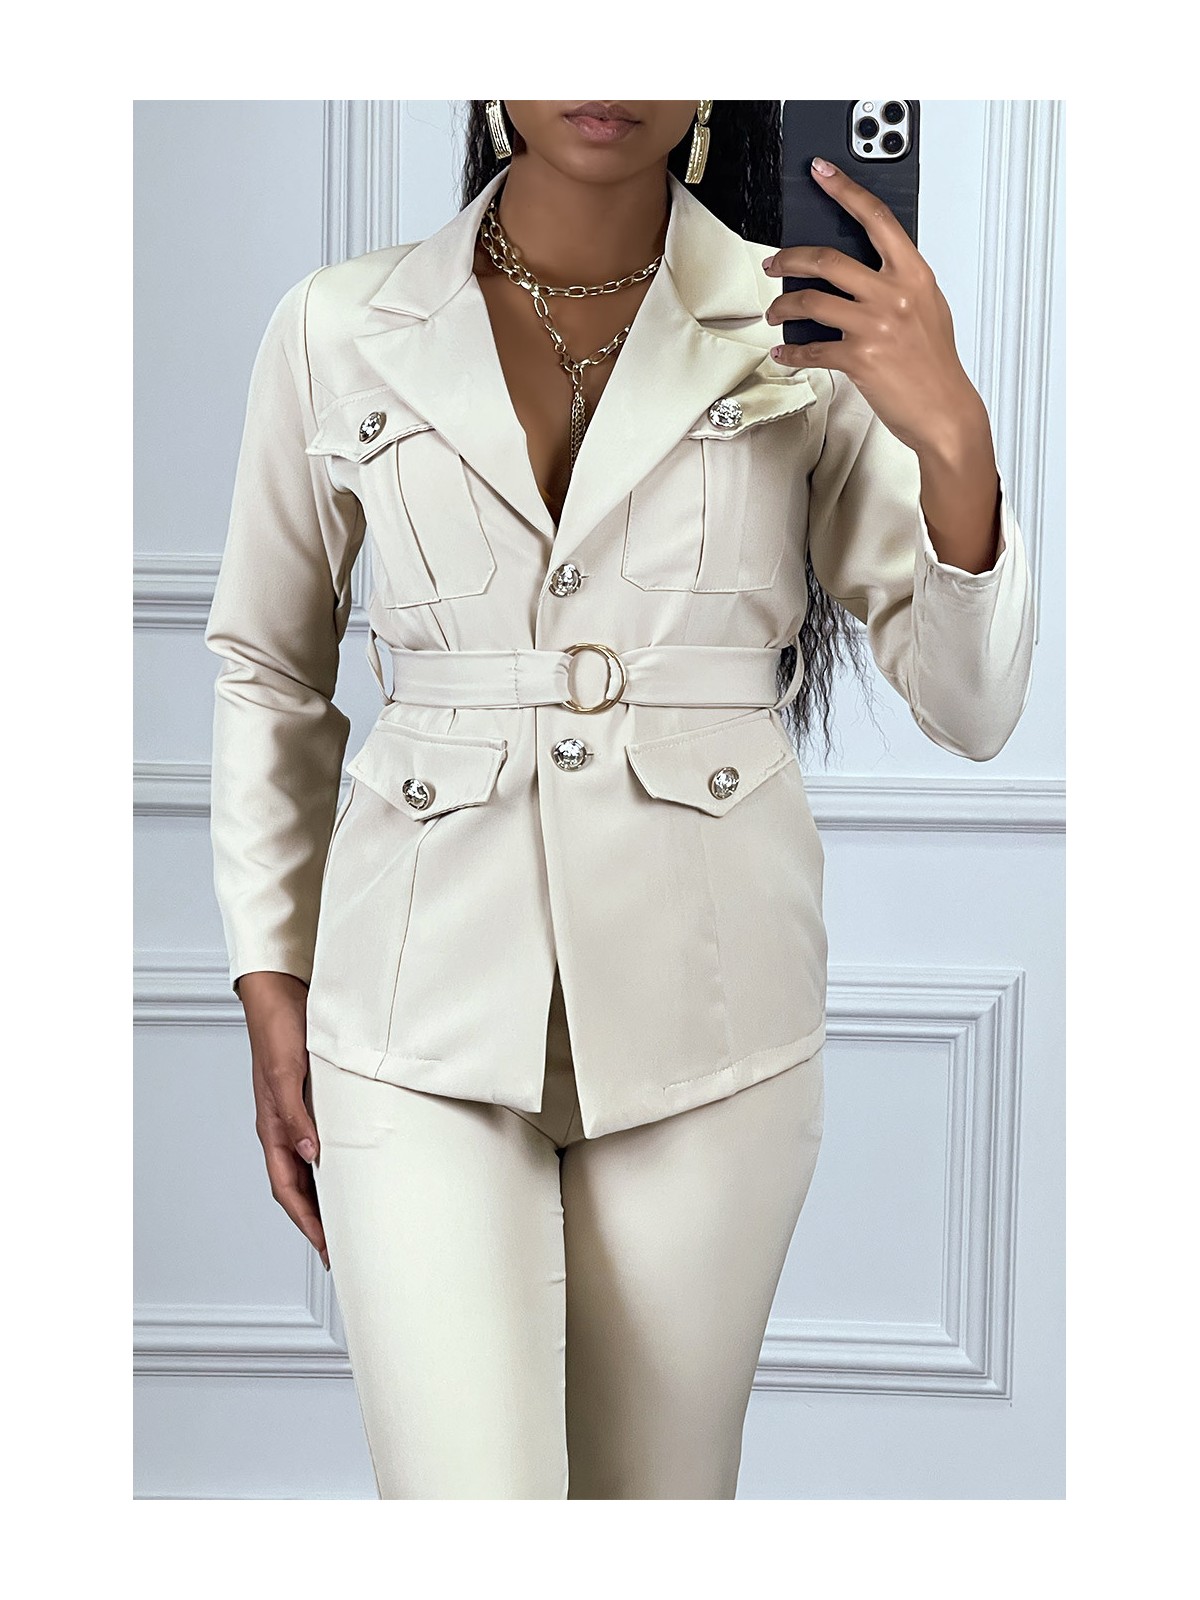 EnBBmble tailleur beige veste et pantalon avec ceinture réglable - 5